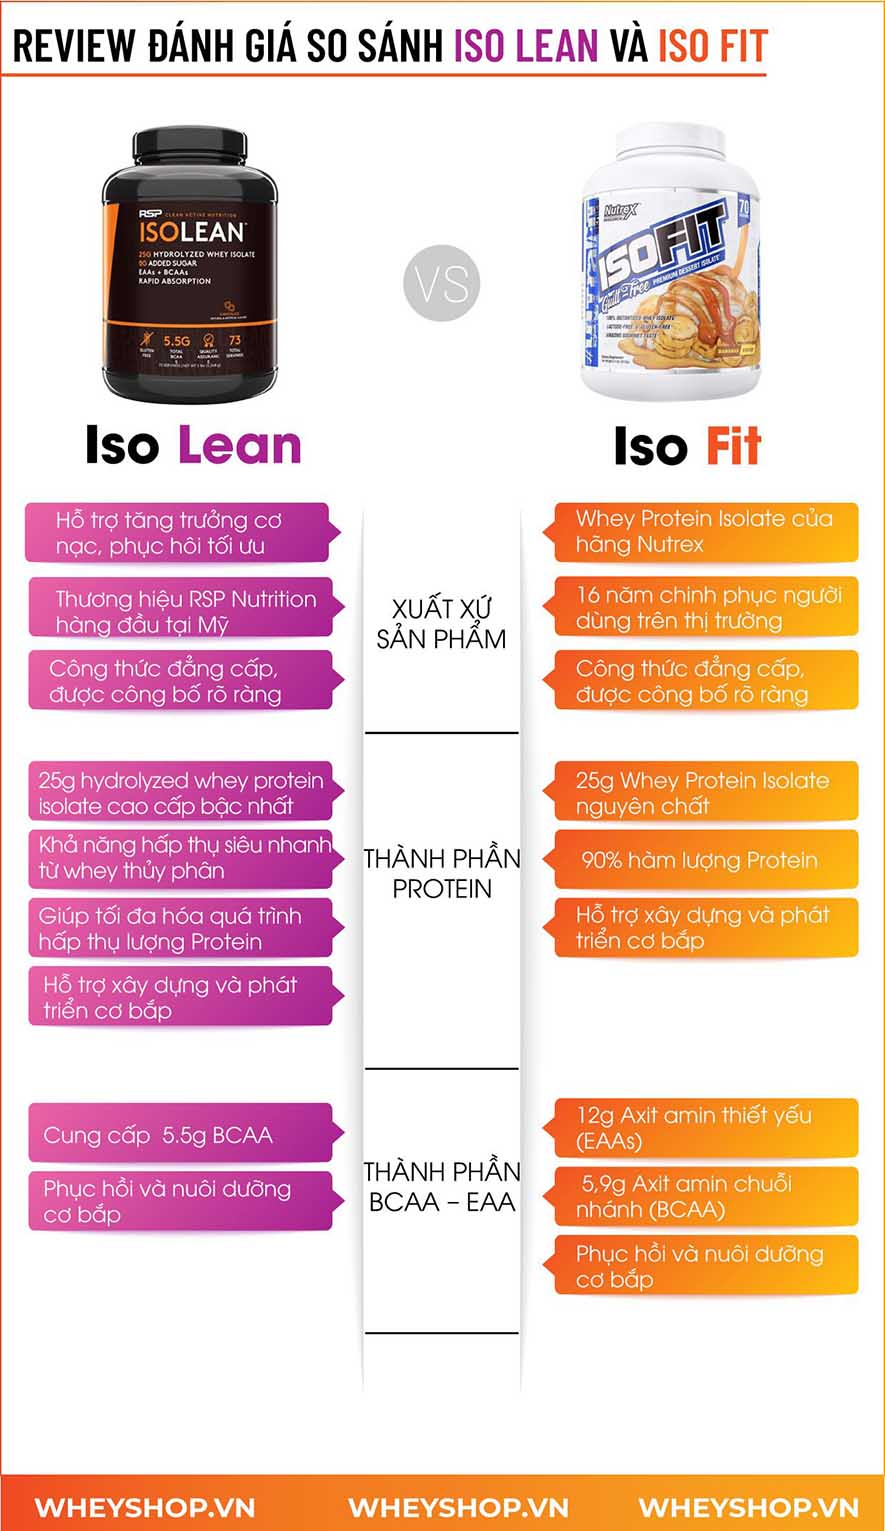 Nếu bạn đang băn khoăn trong việc lựa chọn ISO Lean và ISO Fit thì hãy cùng WheyShop tìm hiểu đánh giá, review chi tiết...